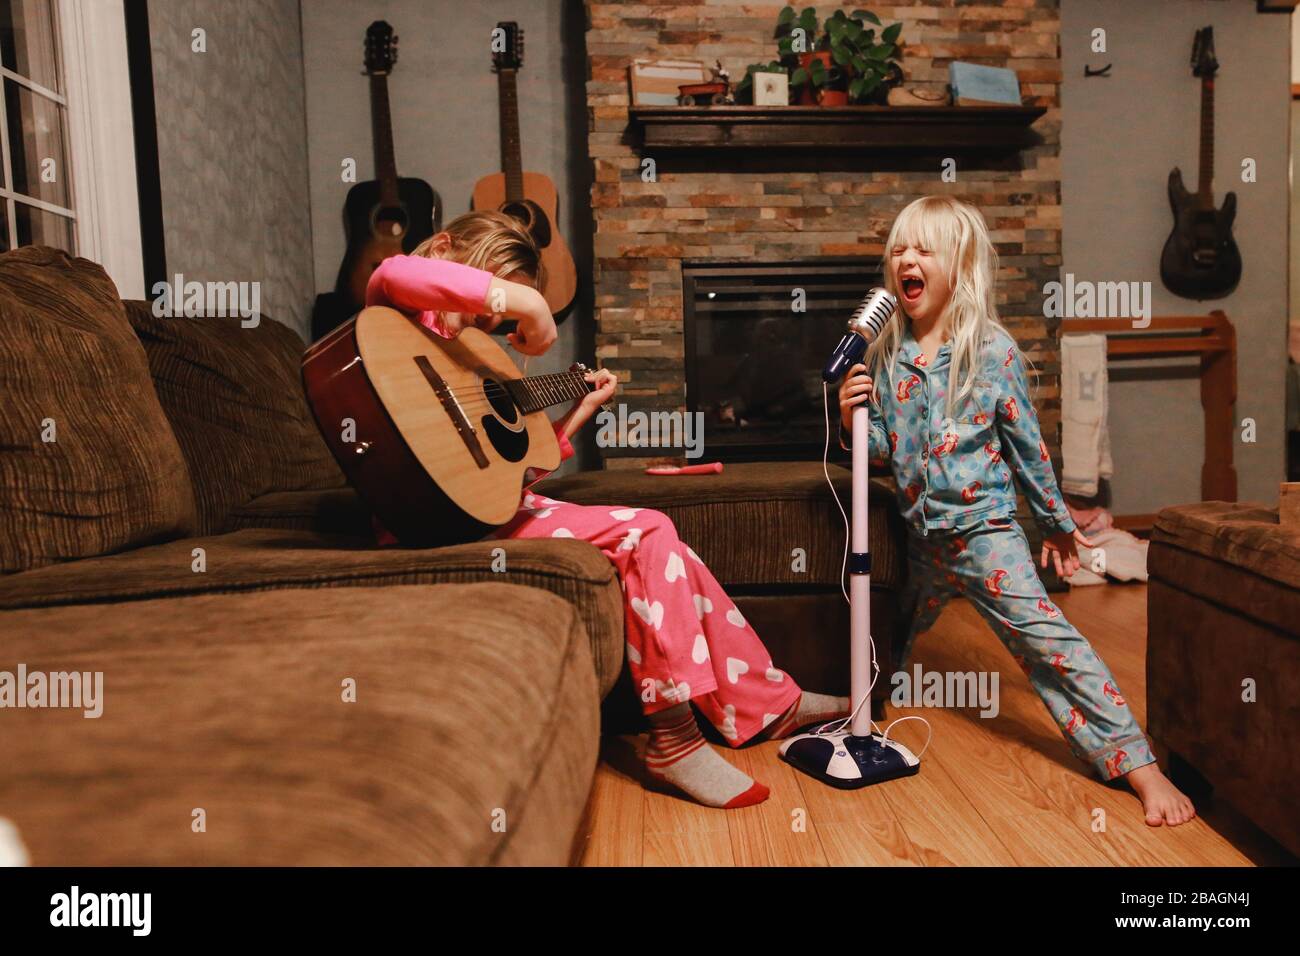 Les jeunes filles chantent bruyamment et jouent de la guitare dans le salon Banque D'Images